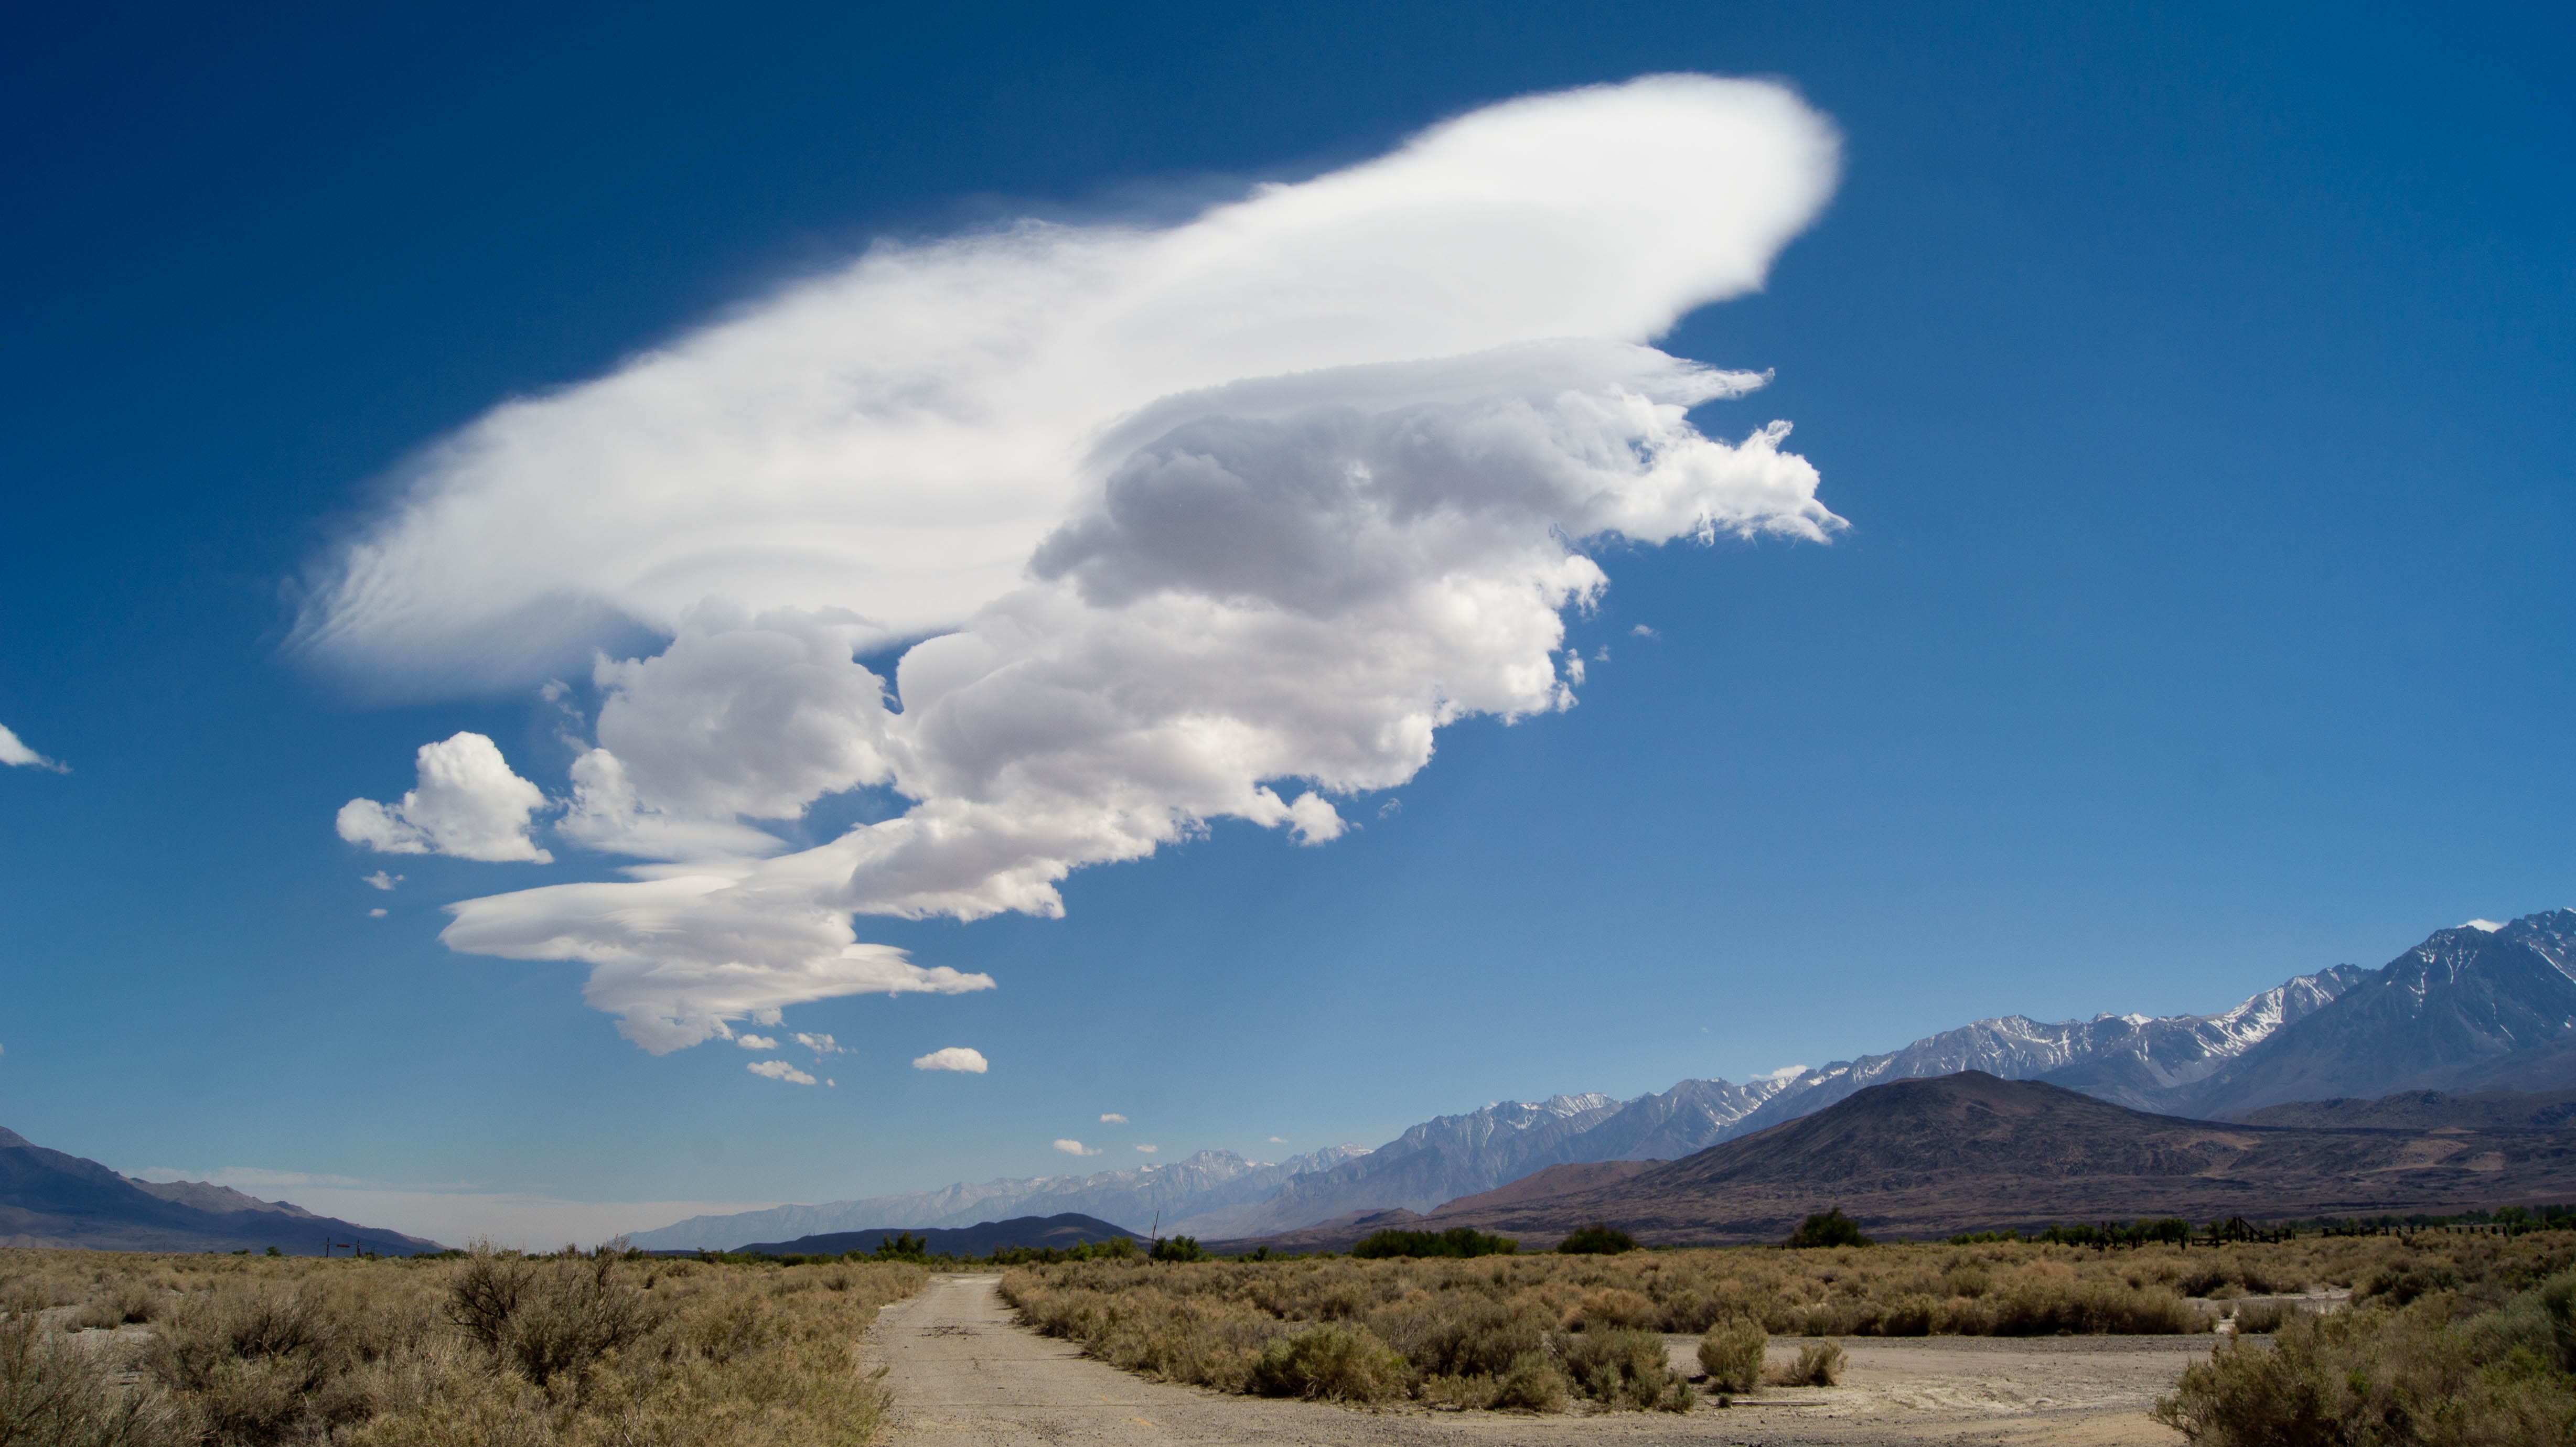 rotor clouds beside sierra nevada